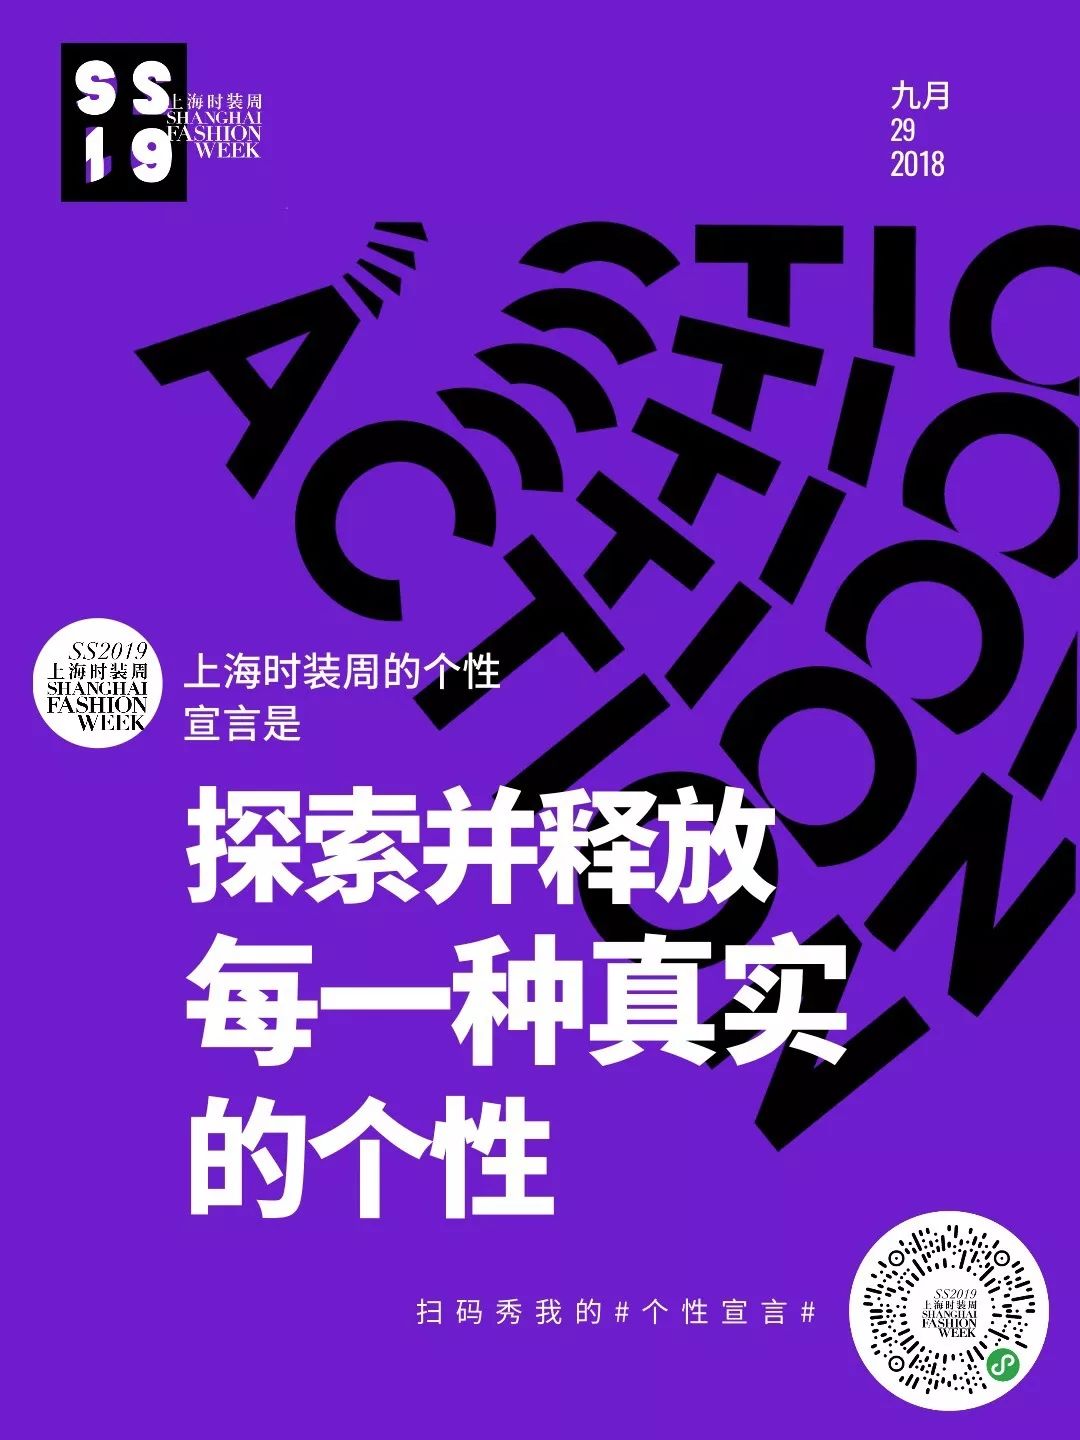 国庆福利 | 打卡「个性宣言」海报,送你2019春夏上海时装周门票!